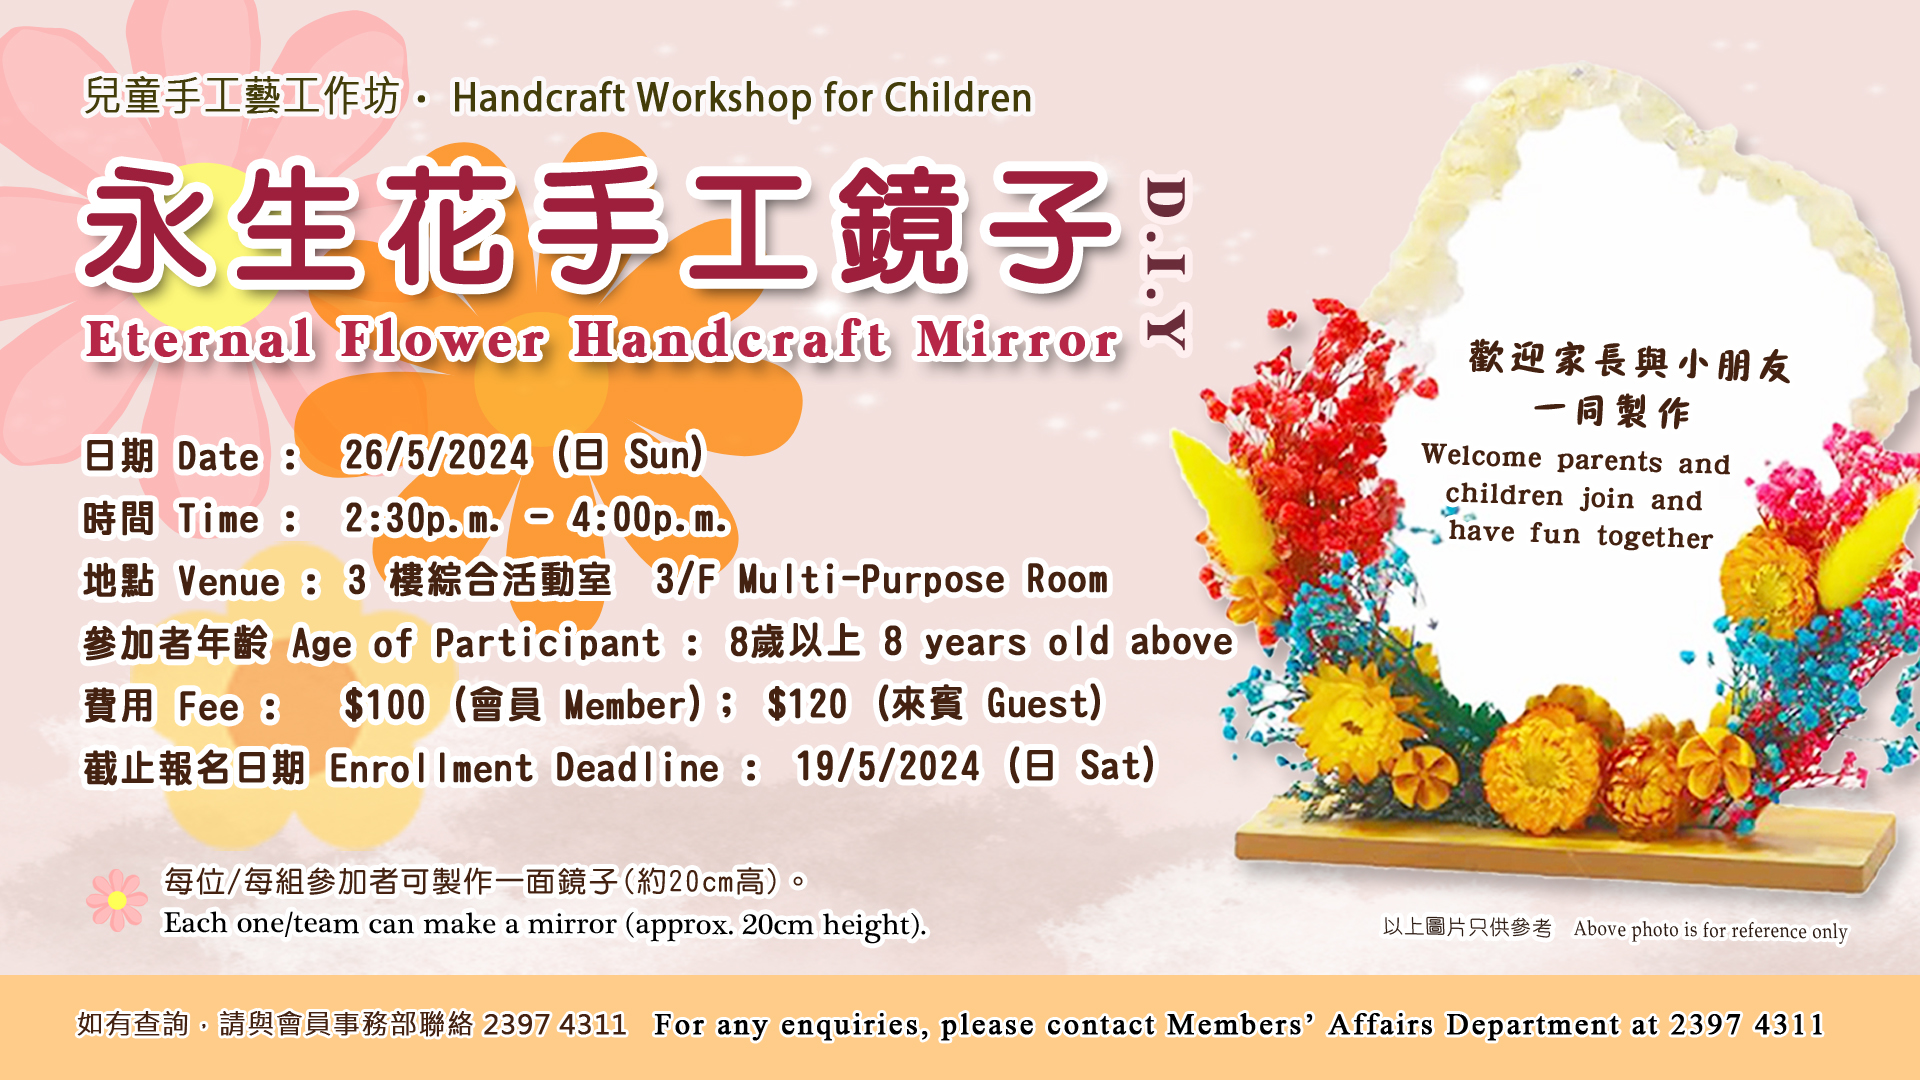 Handcraft Workshop for Children – Eternal Flower Handcraft Mirror